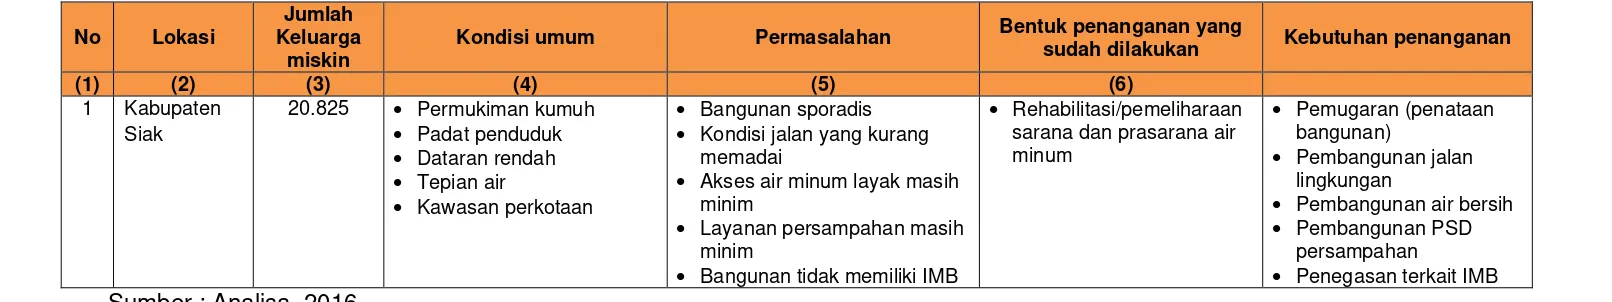 Tabel 4.3 Analisis Kebutuhan Penanganan Penduduk Miskin Kabupaten Siak 